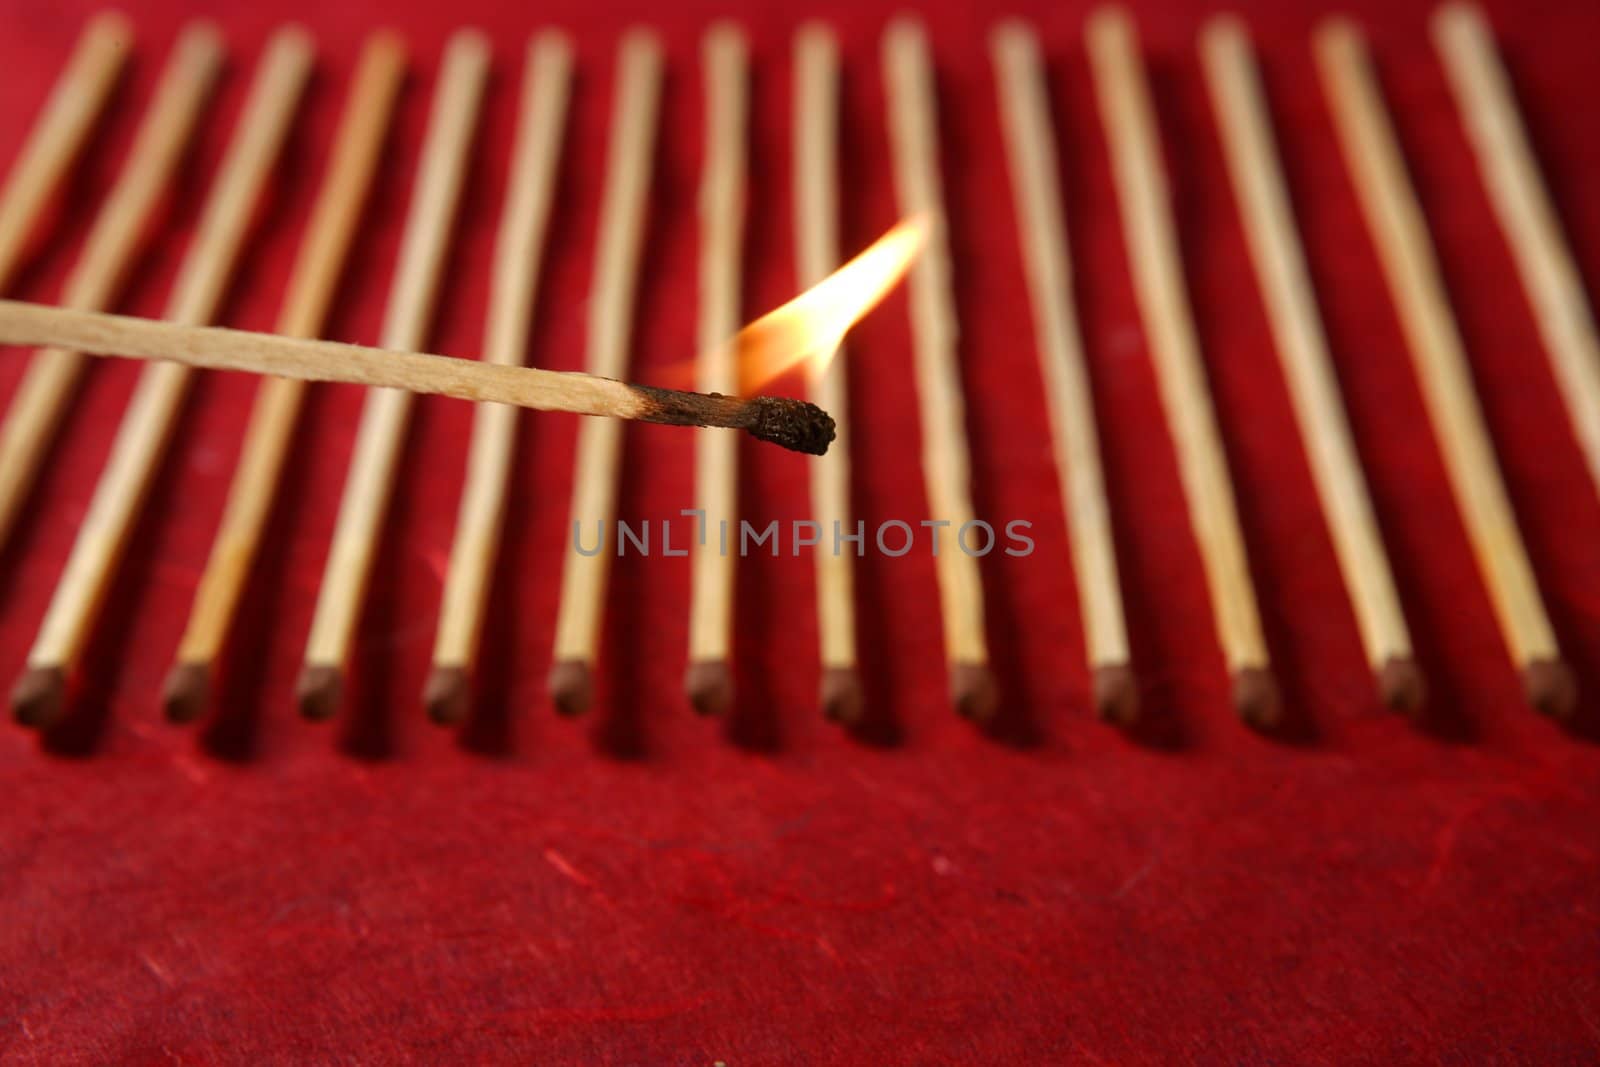 Light wooden matches arrangement by lunamarina